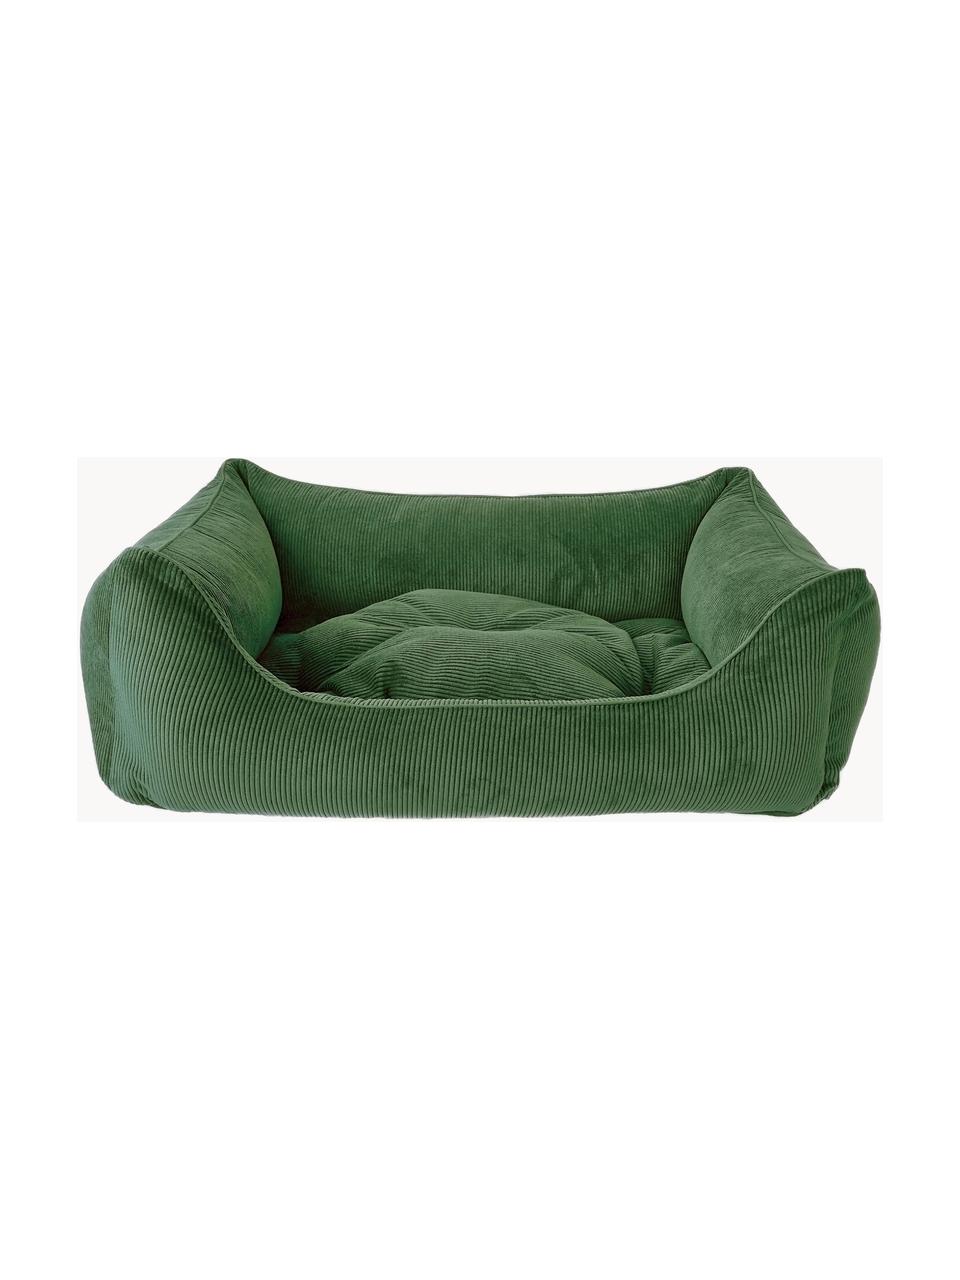 Cord-Hundebett Relax, verschiedene Größen, Bezug: Cord (100 % Polyester) De, Dunkelgrün, B 90 x T 60 cm